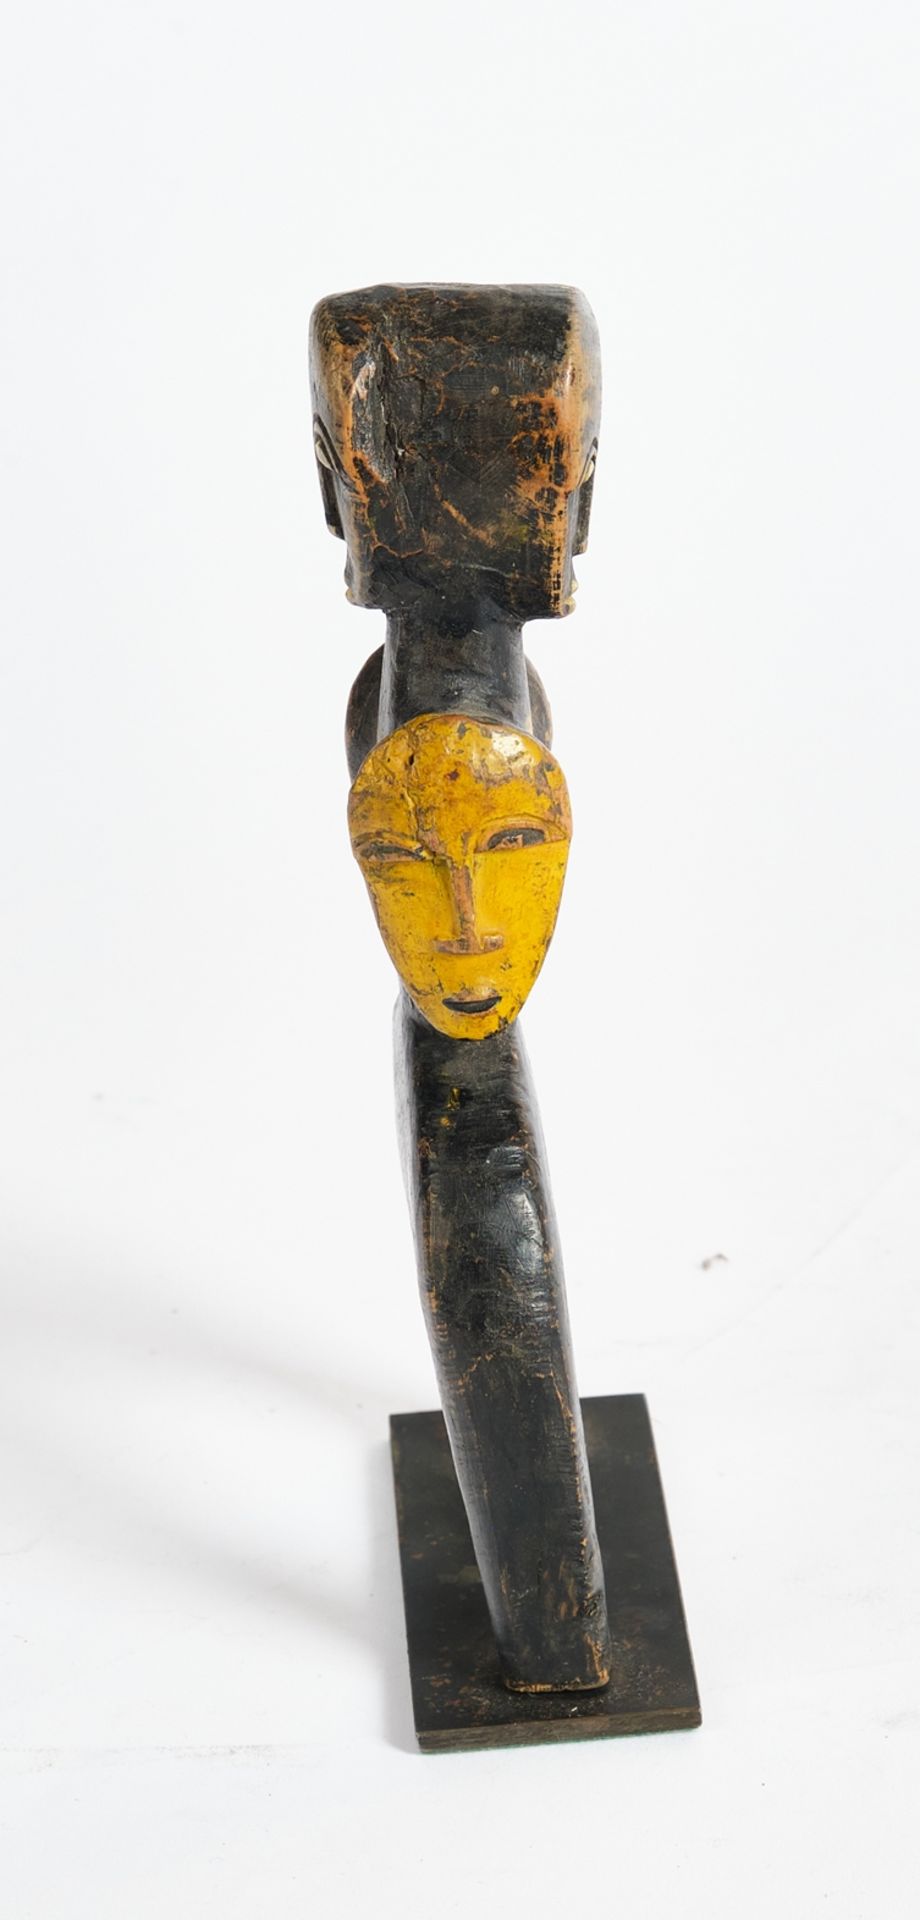 Webrollenhalter, Afrika, Holz, teils gelbe Farbe, figural mit vier Gesichtern, 17 cm hoch, gesockel - Image 2 of 2